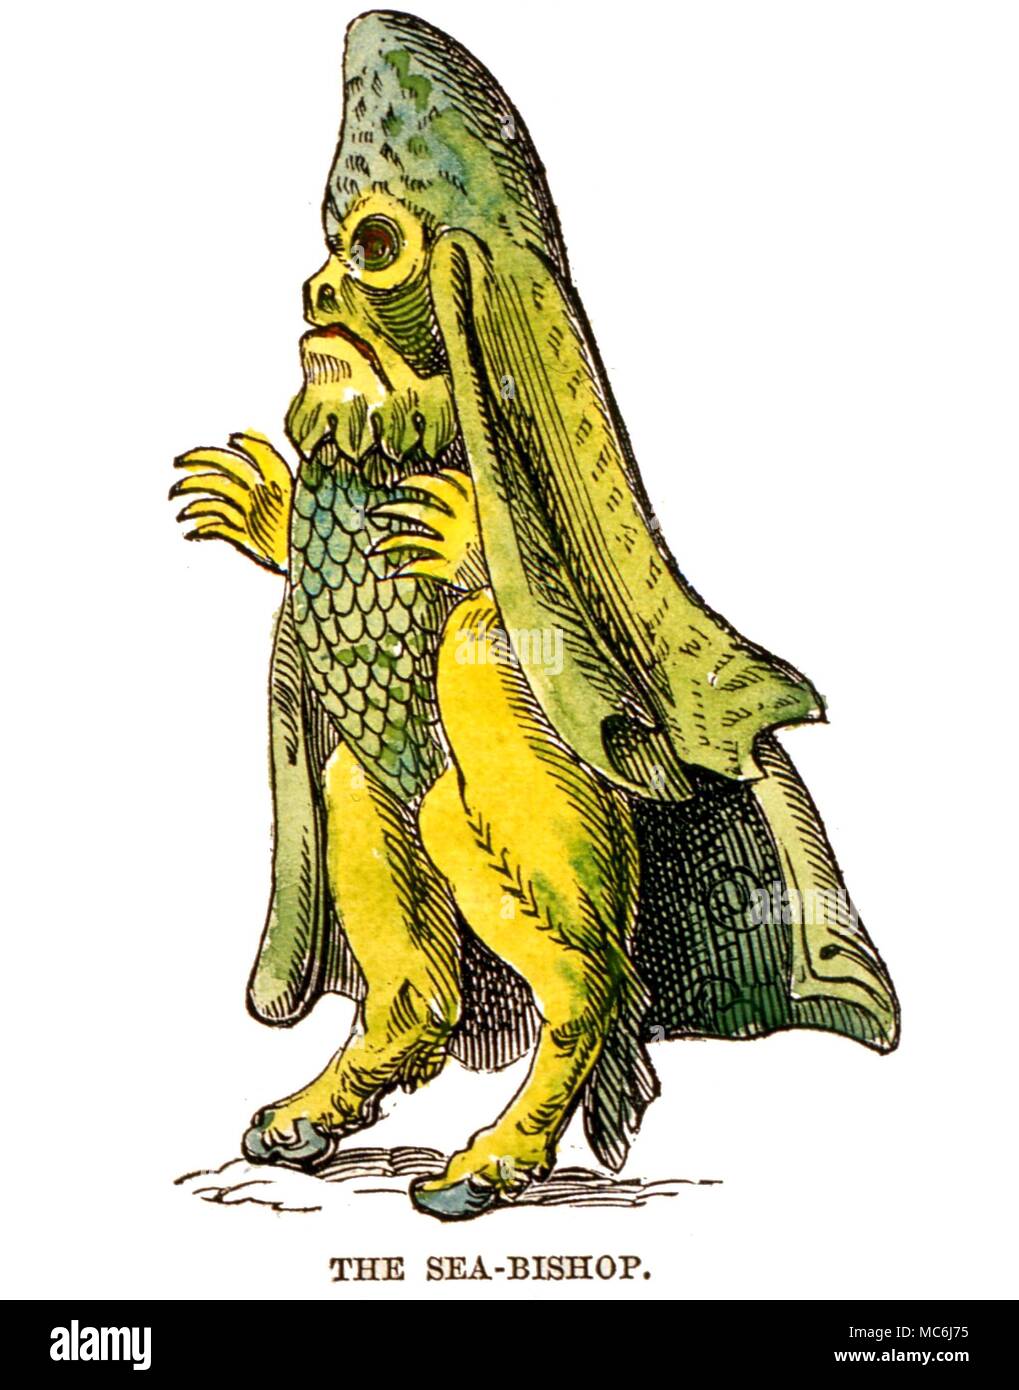 Monster - MEER Bischof - Bischof - ein Monster von Traveller's Tales, aus einer Zeit, als man glaubte, dass das Meer hatte das Äquivalent der jedes Geschöpf auf dem Land gefunden. Aus dem Jahr 1864 Ausgabe von "Das Buch der Tage' Stockfoto